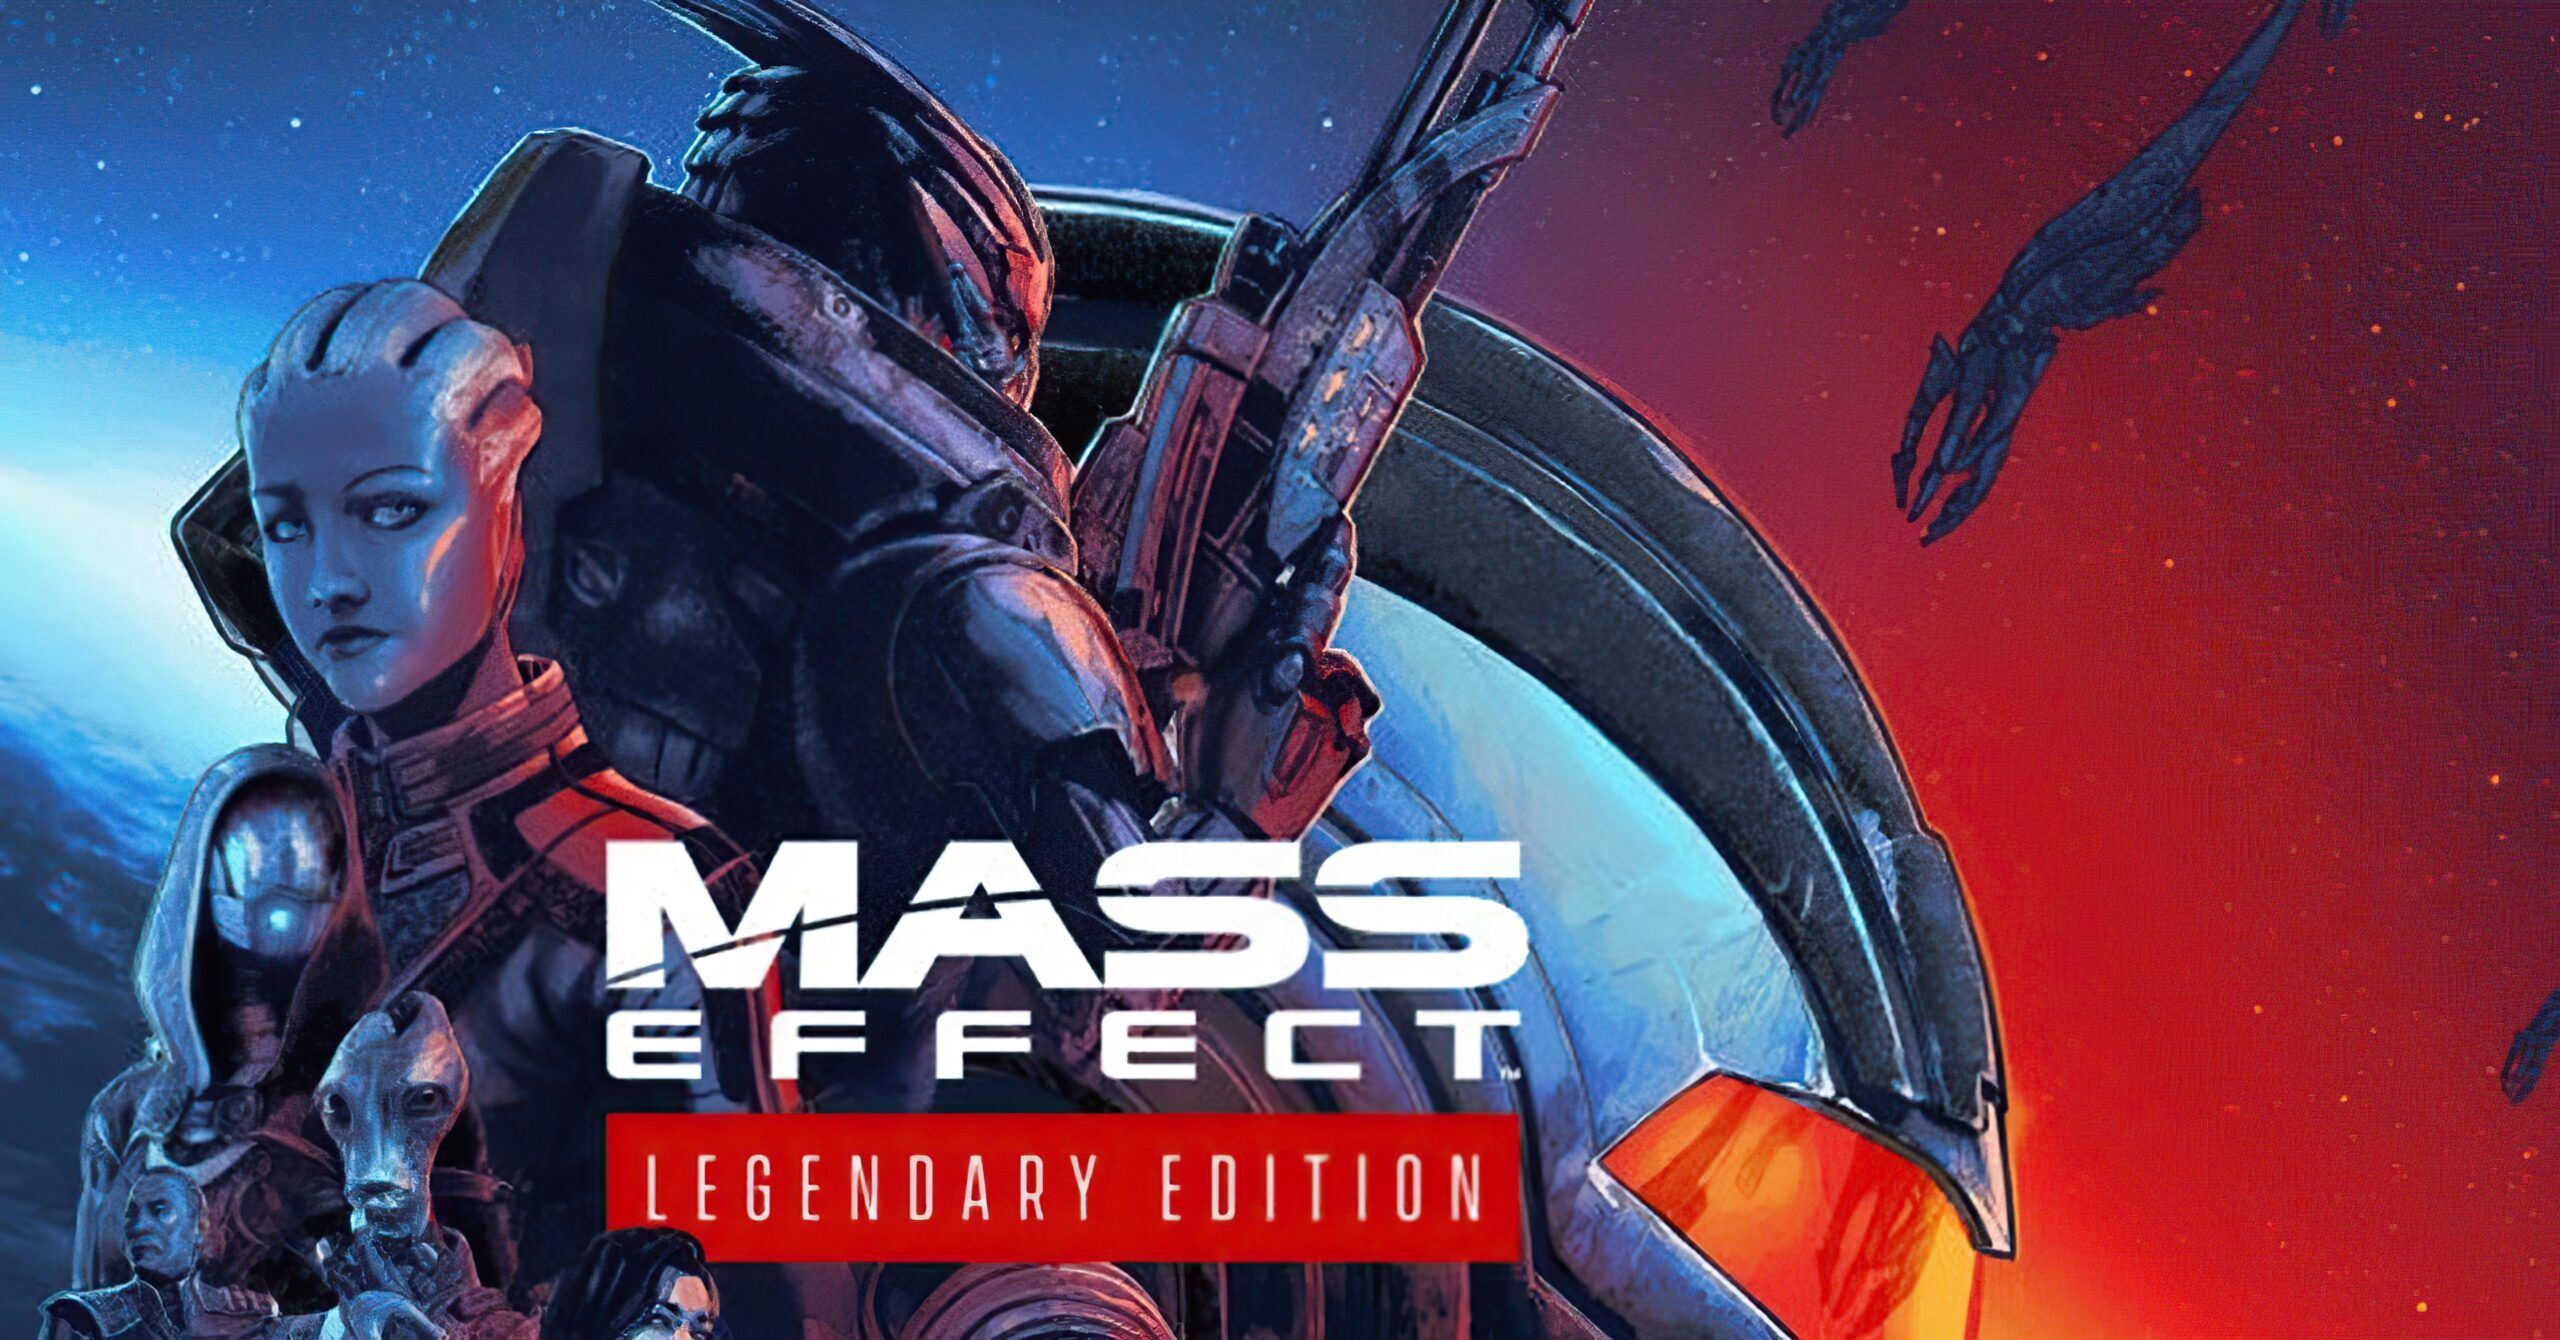 Mass Effect Legendary Edition New Screenshots Highlight Massive Mass Effect 1 Improvements